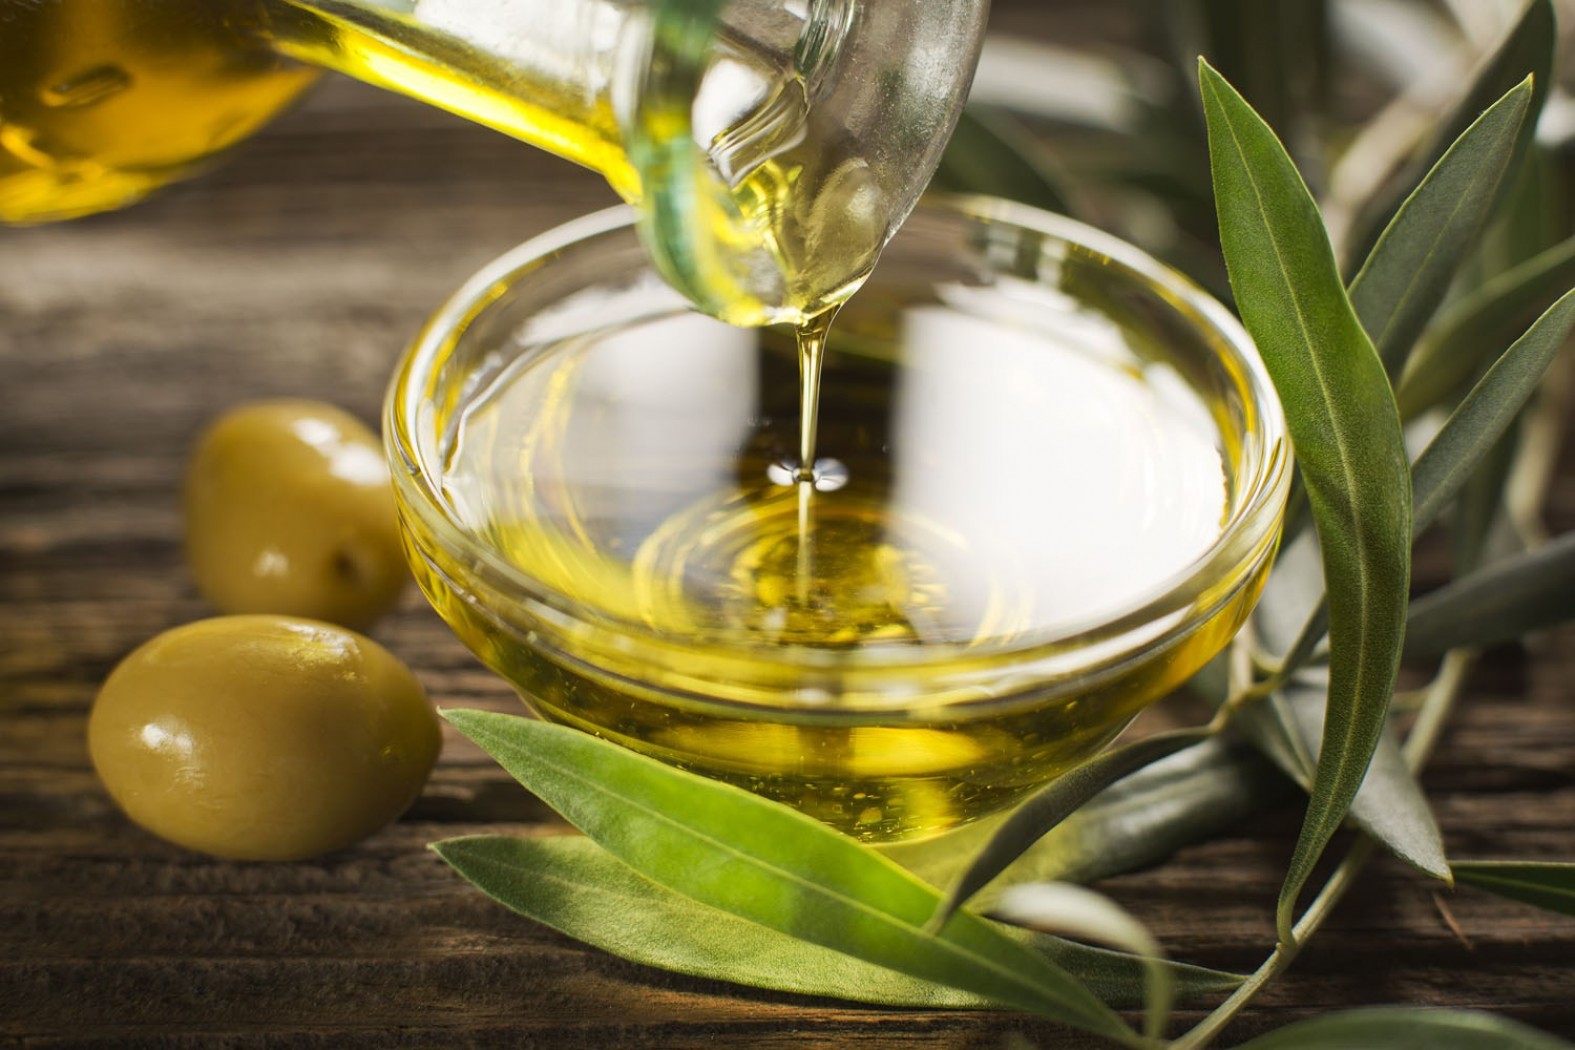 Противопоказания к применению оливкового масла для кожи лица